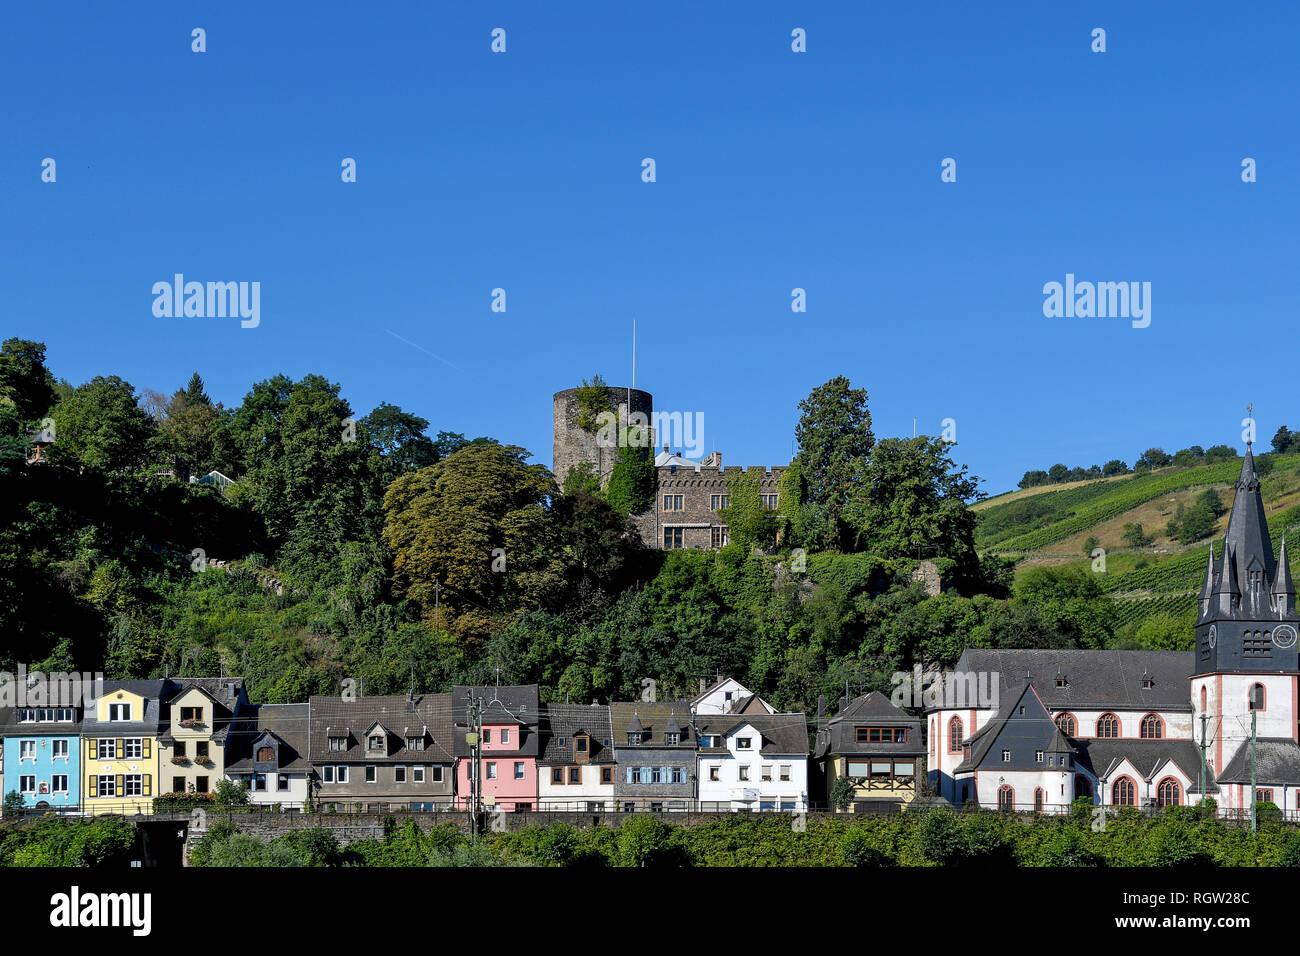 Fila di case colorate e chiesa medievale con castello sulla montagna in Germania Foto Stock